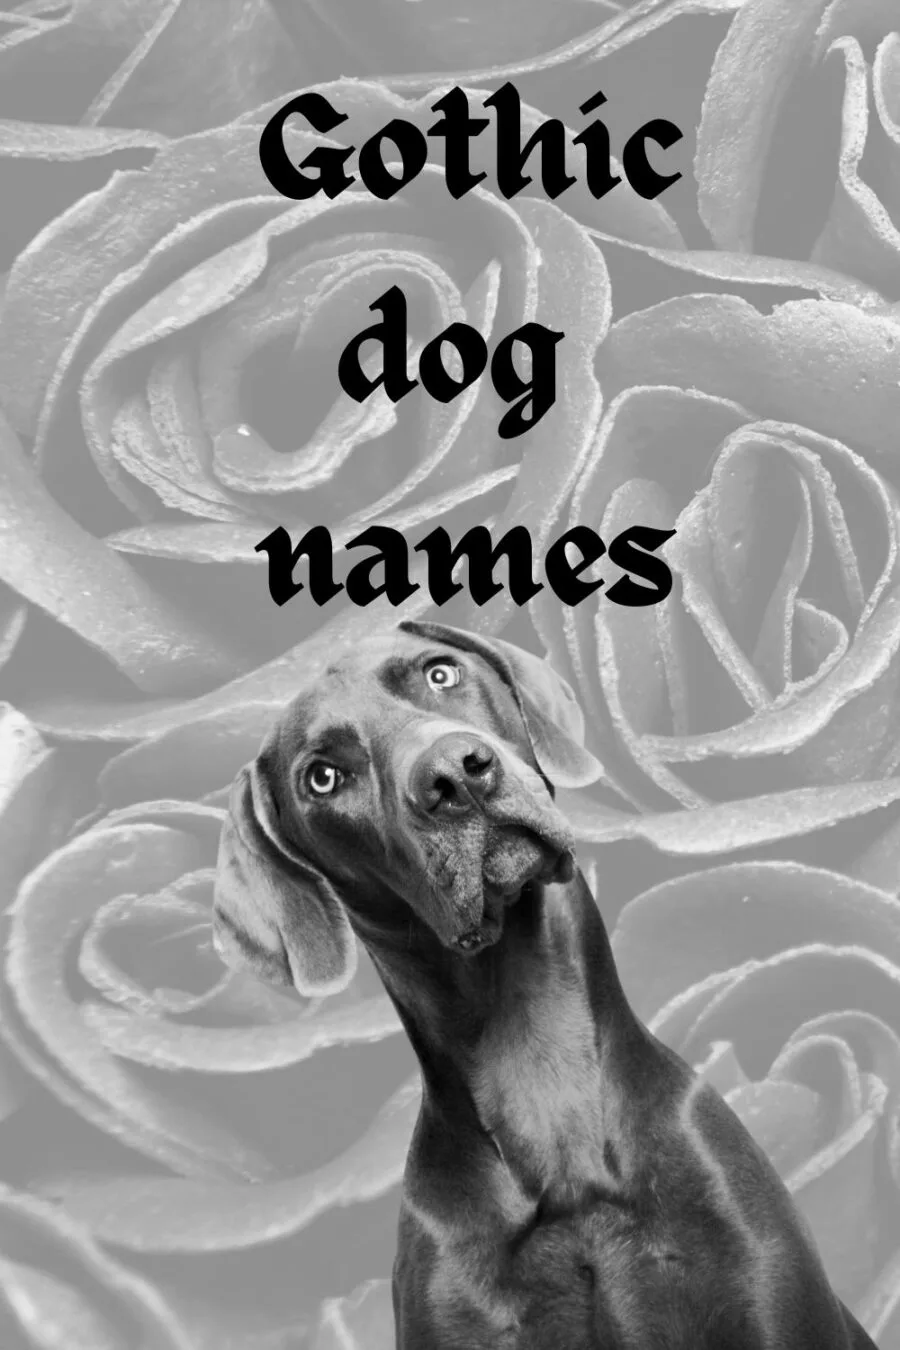 Gothic dog names - image of gray dog on background of black roses